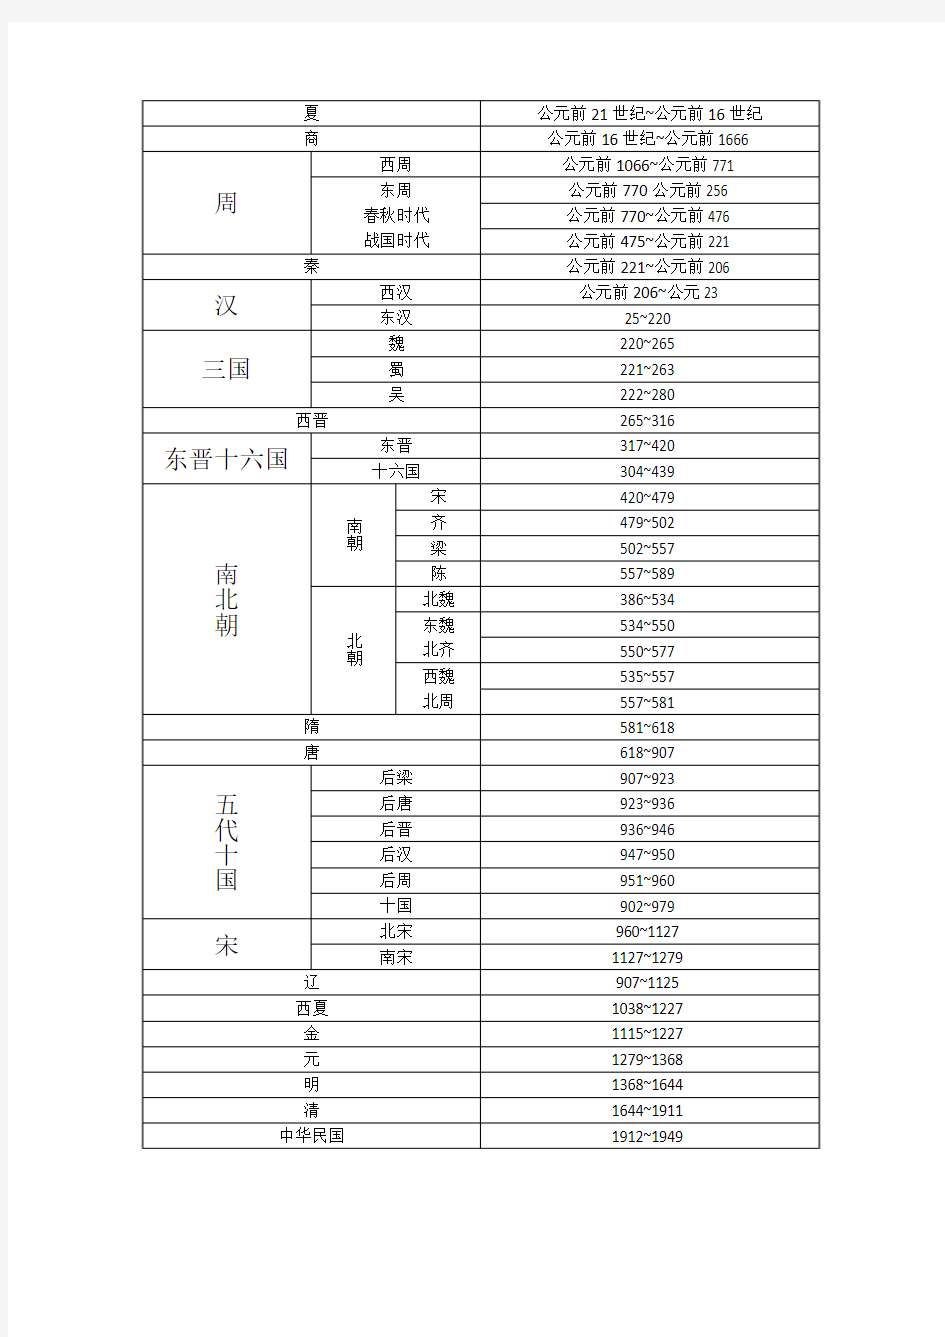 中国历史朝代公元对照表